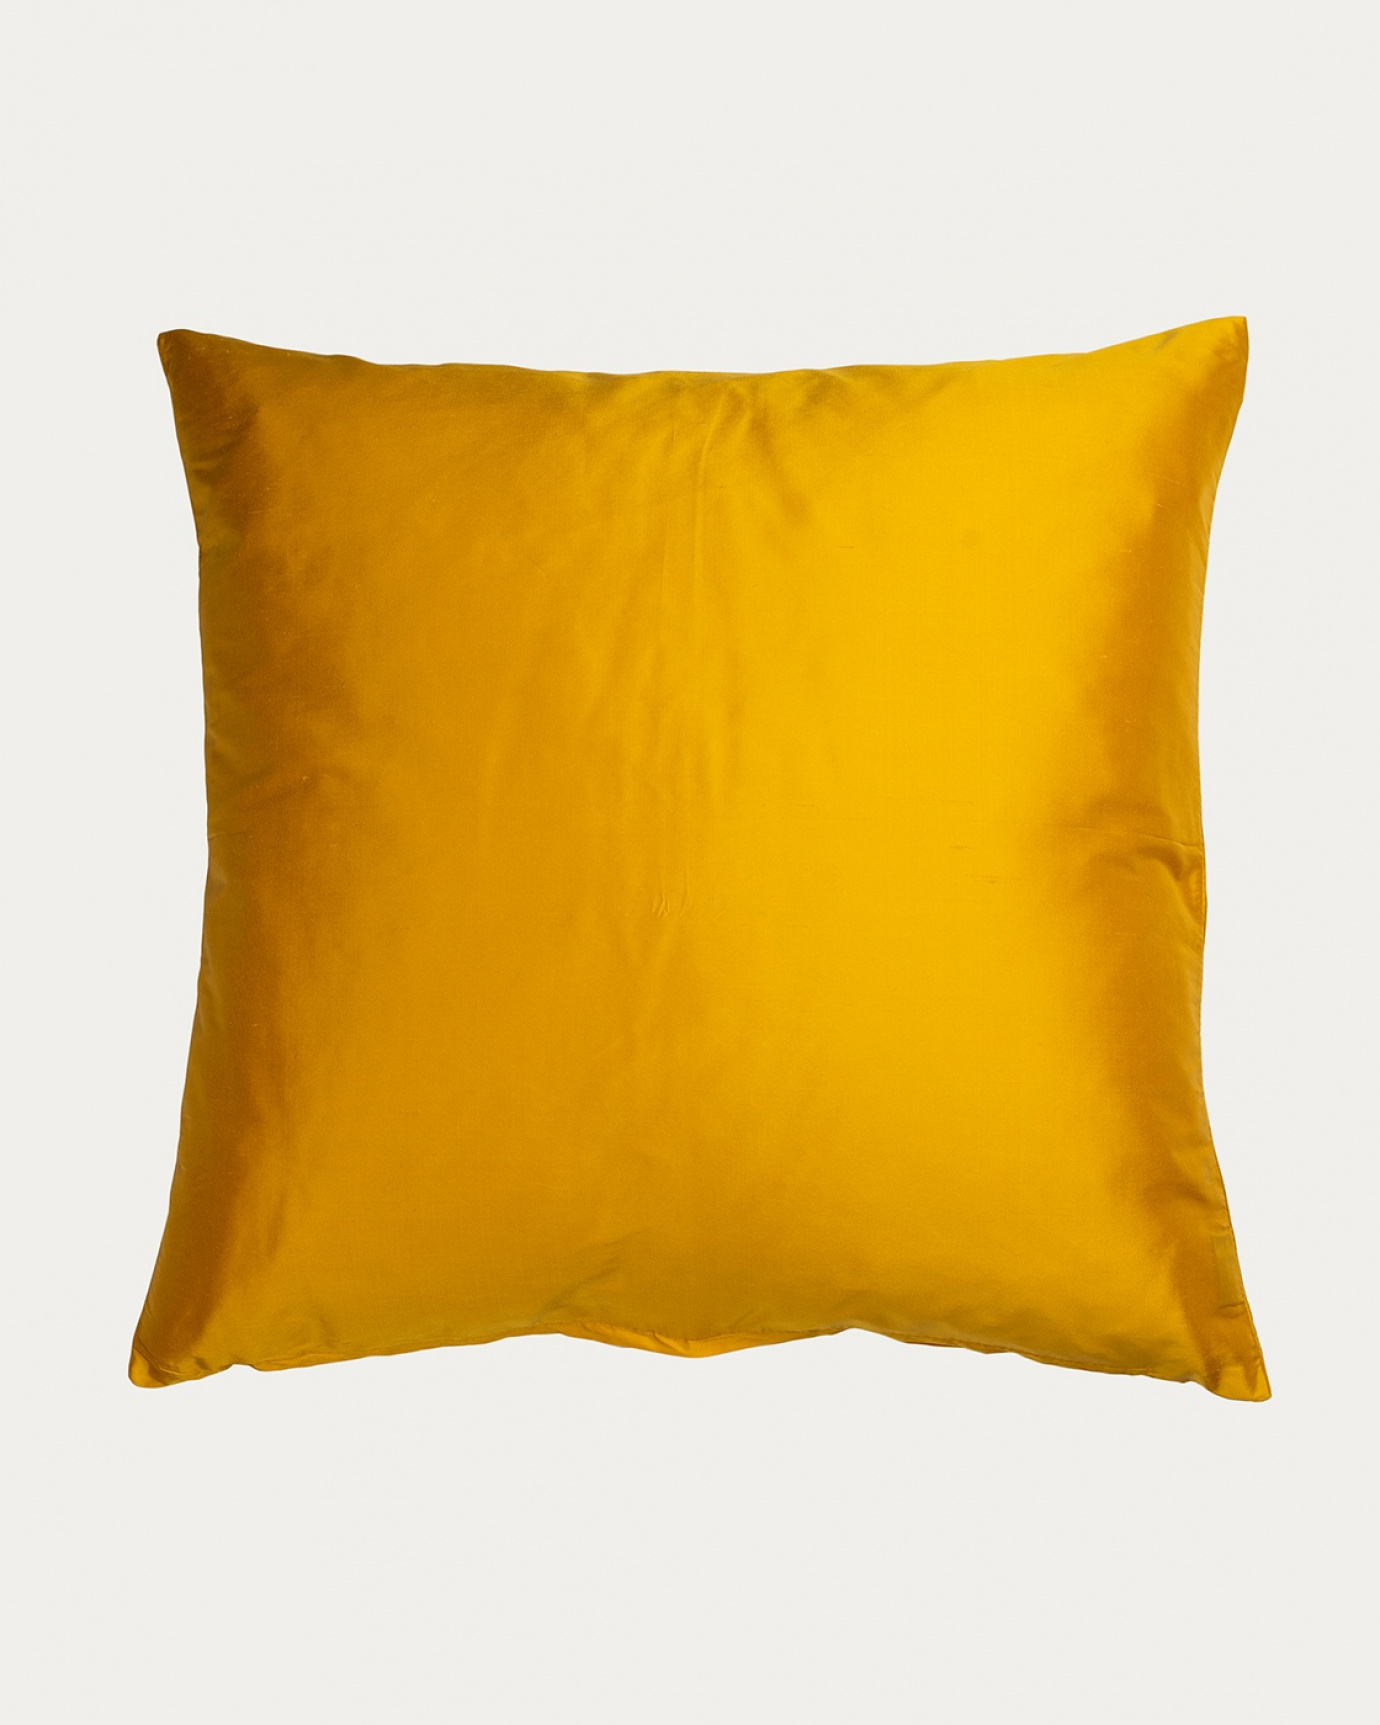 Immagine prodotto giallo mandarino DUPION copricuscini in 100% seta dupion di LINUM DESIGN. Dimensioni 50x50 cm.